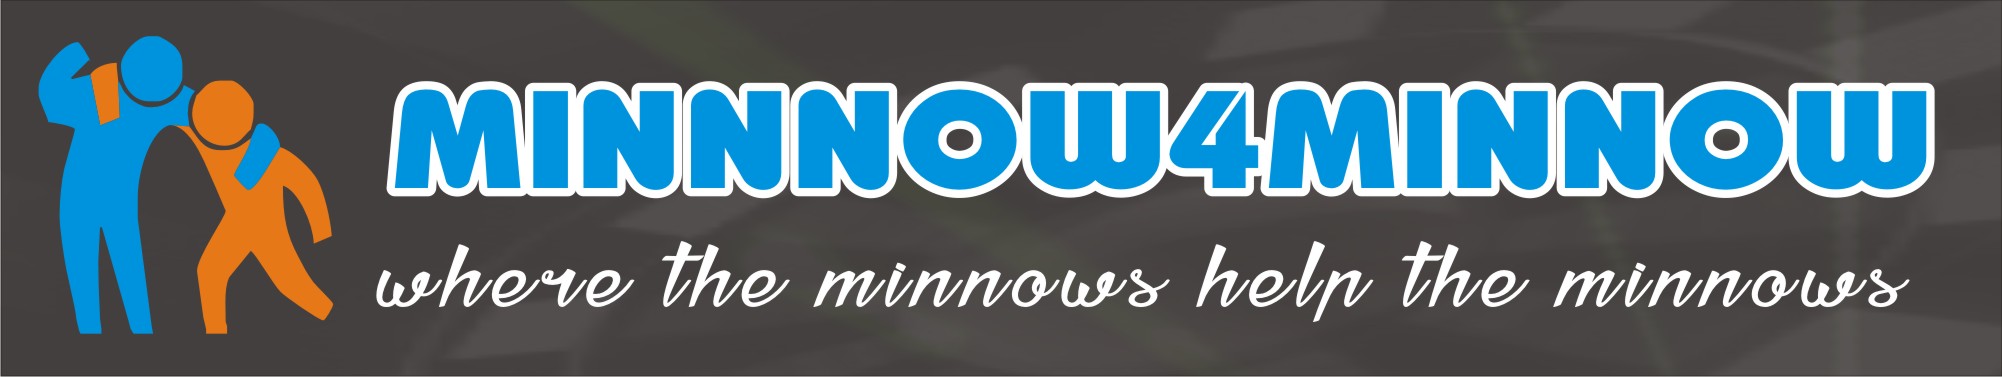 minnows4minnows.jpg